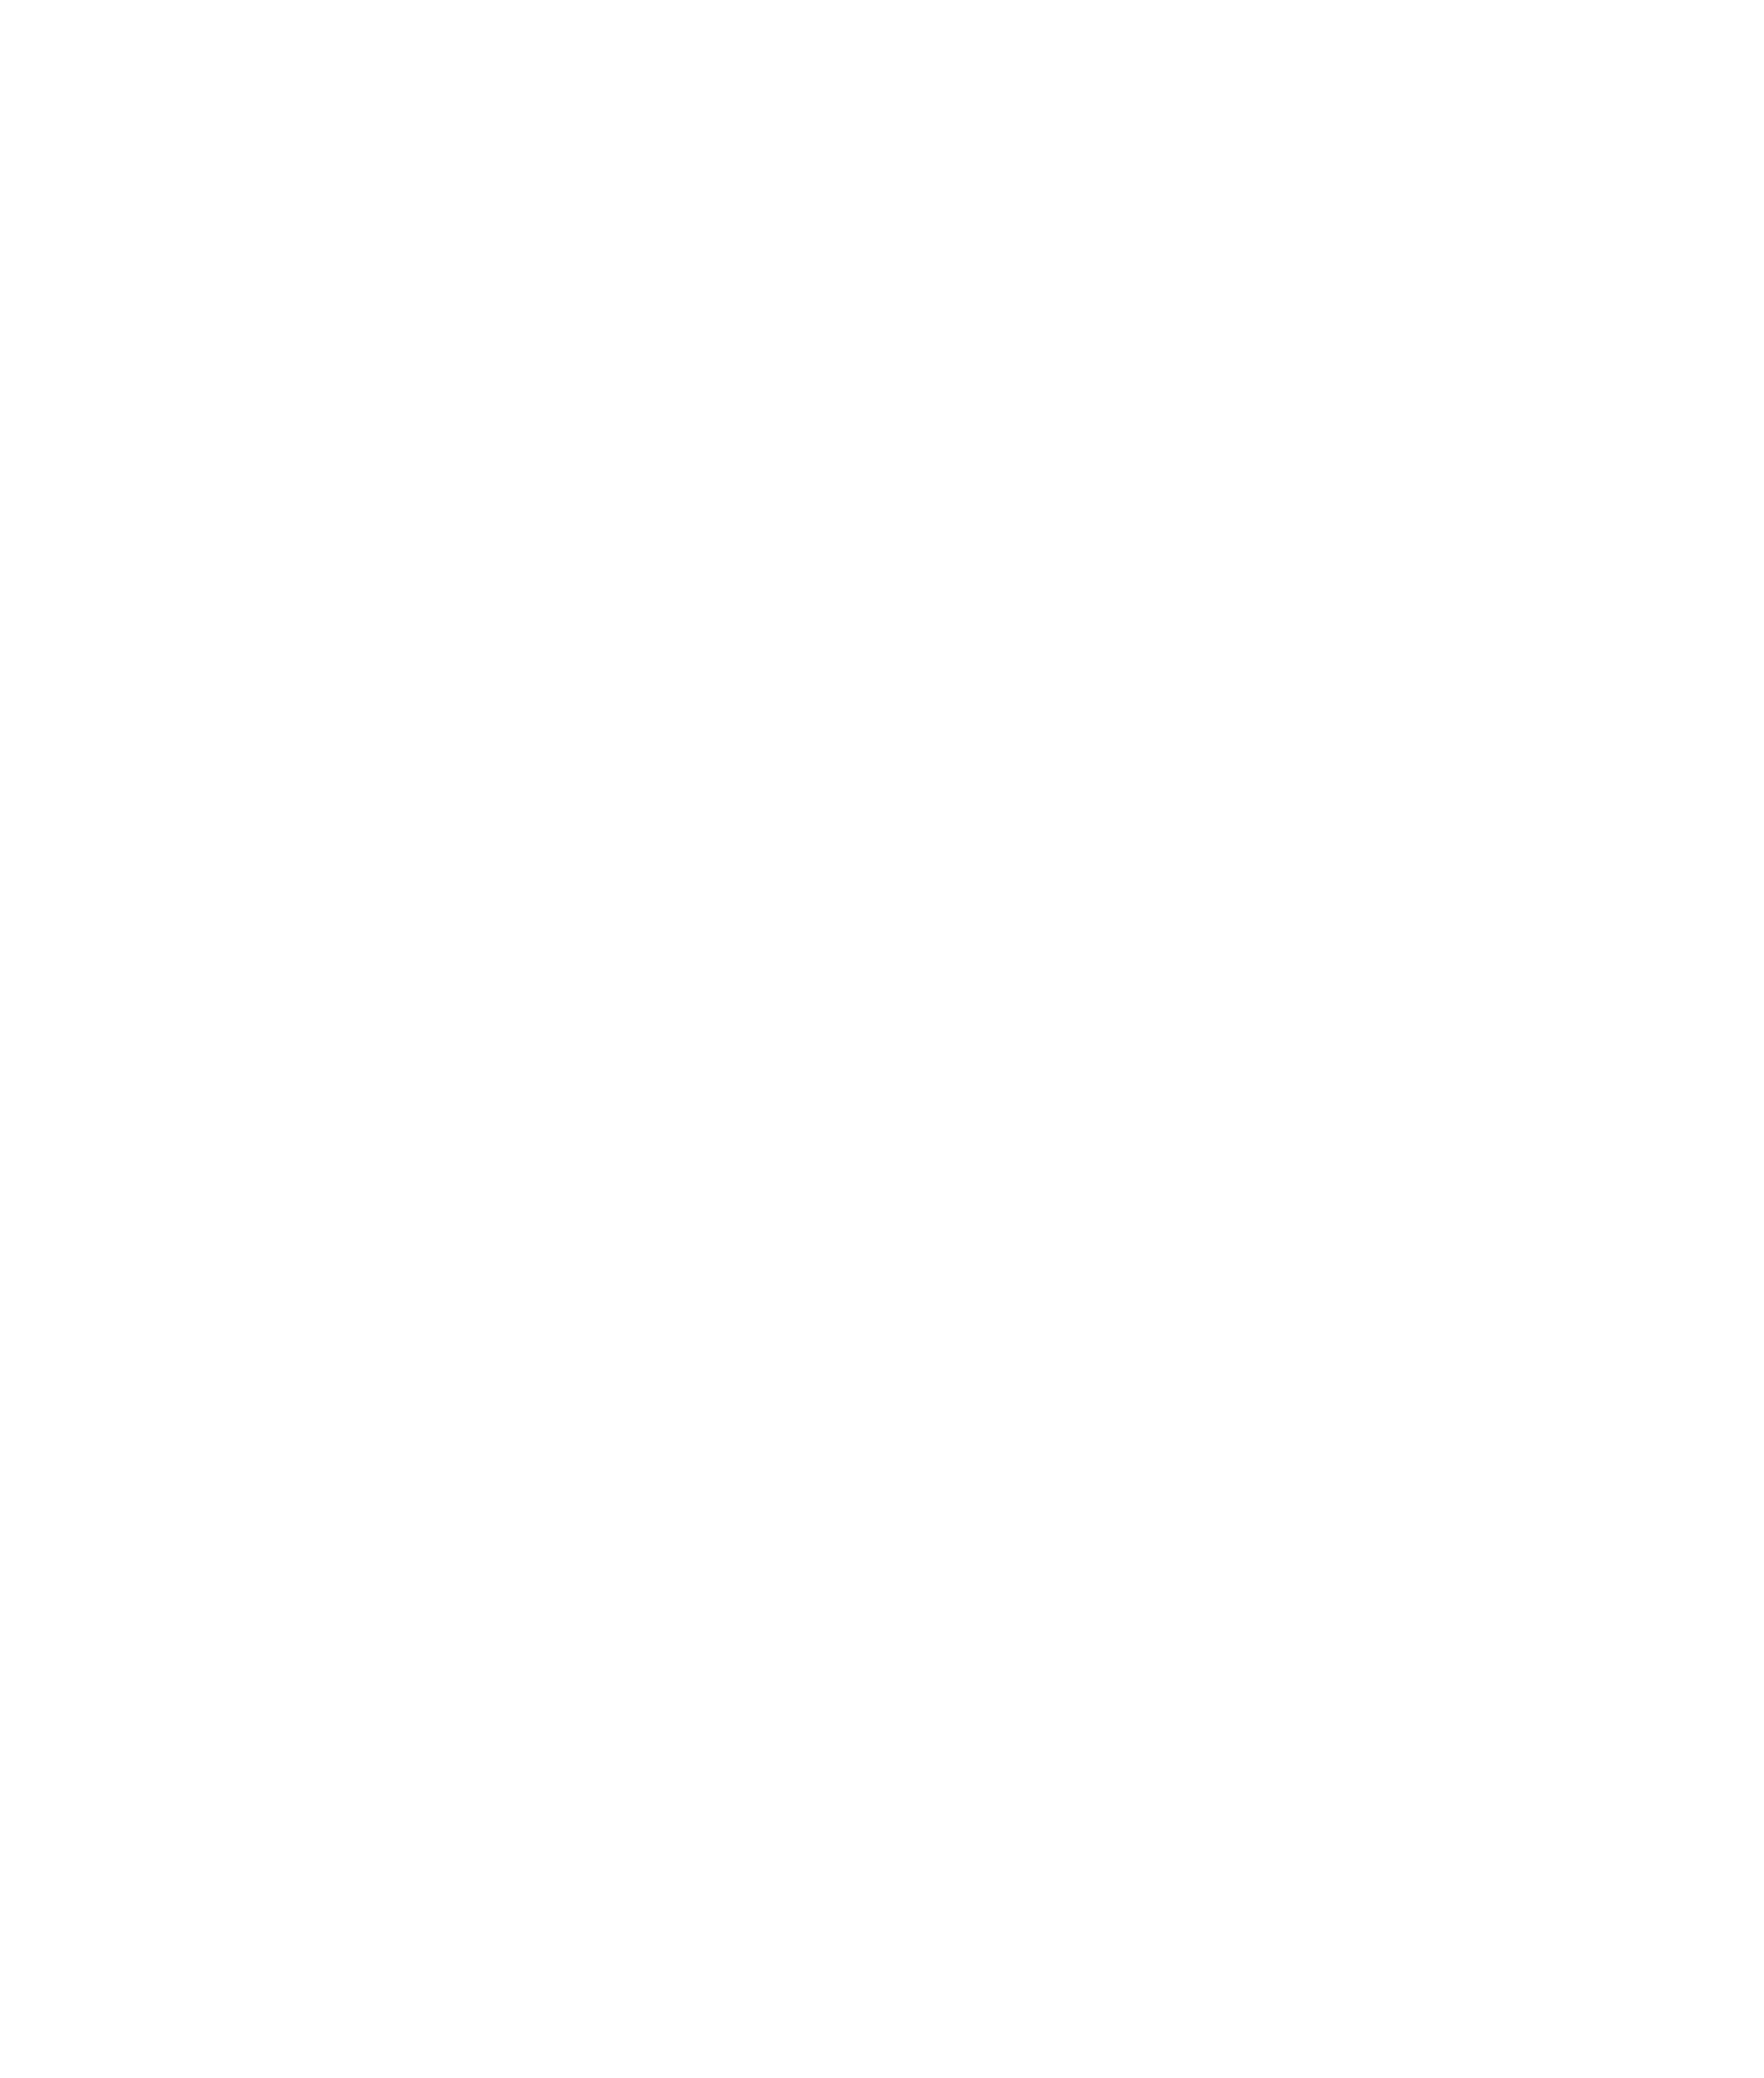 Palm Court Motor Inn